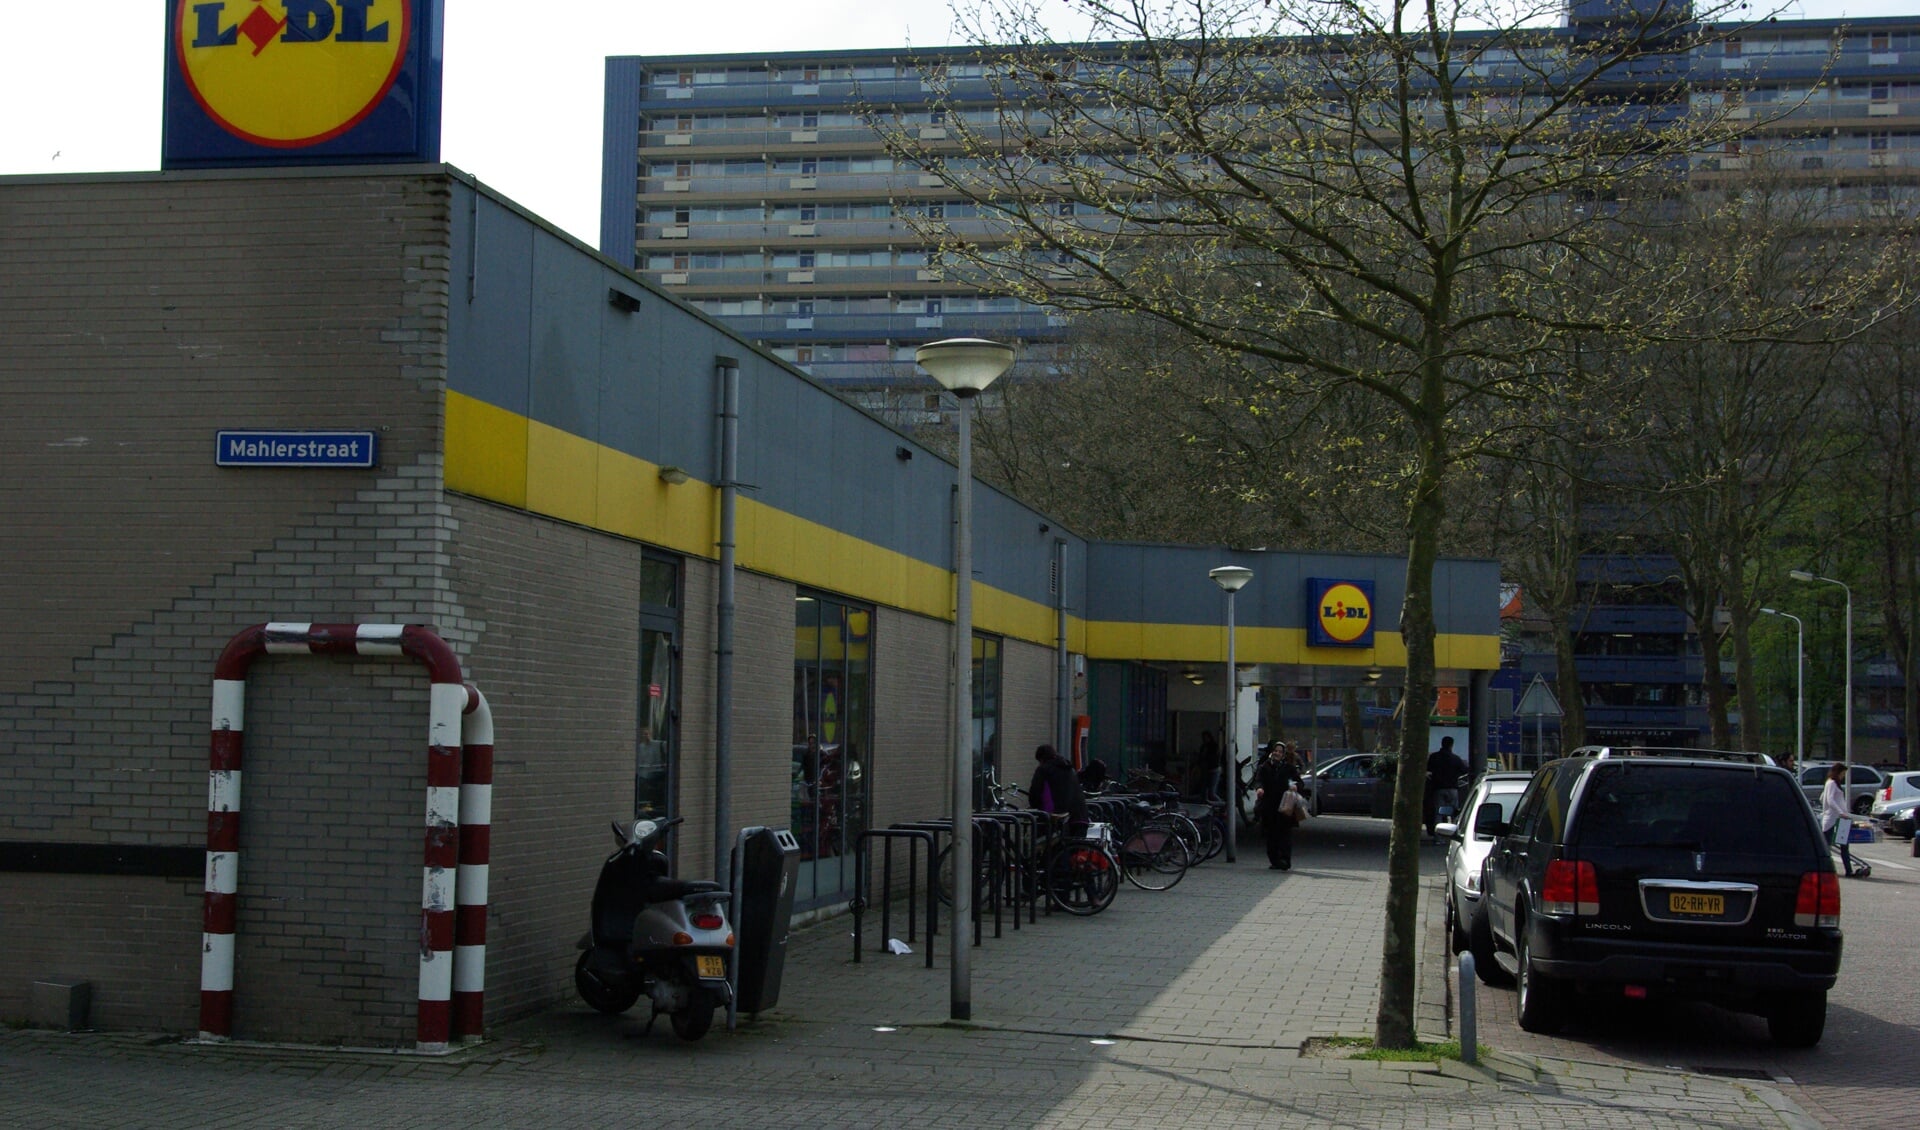 Het winkelcentrum aan de Griegstraat is de favoriete hangplek van jeugd uit Buitenhof, waar het vooral in de avonduren onrustig kan zijn. Menigeen pleit nu voor cameratoezicht. 